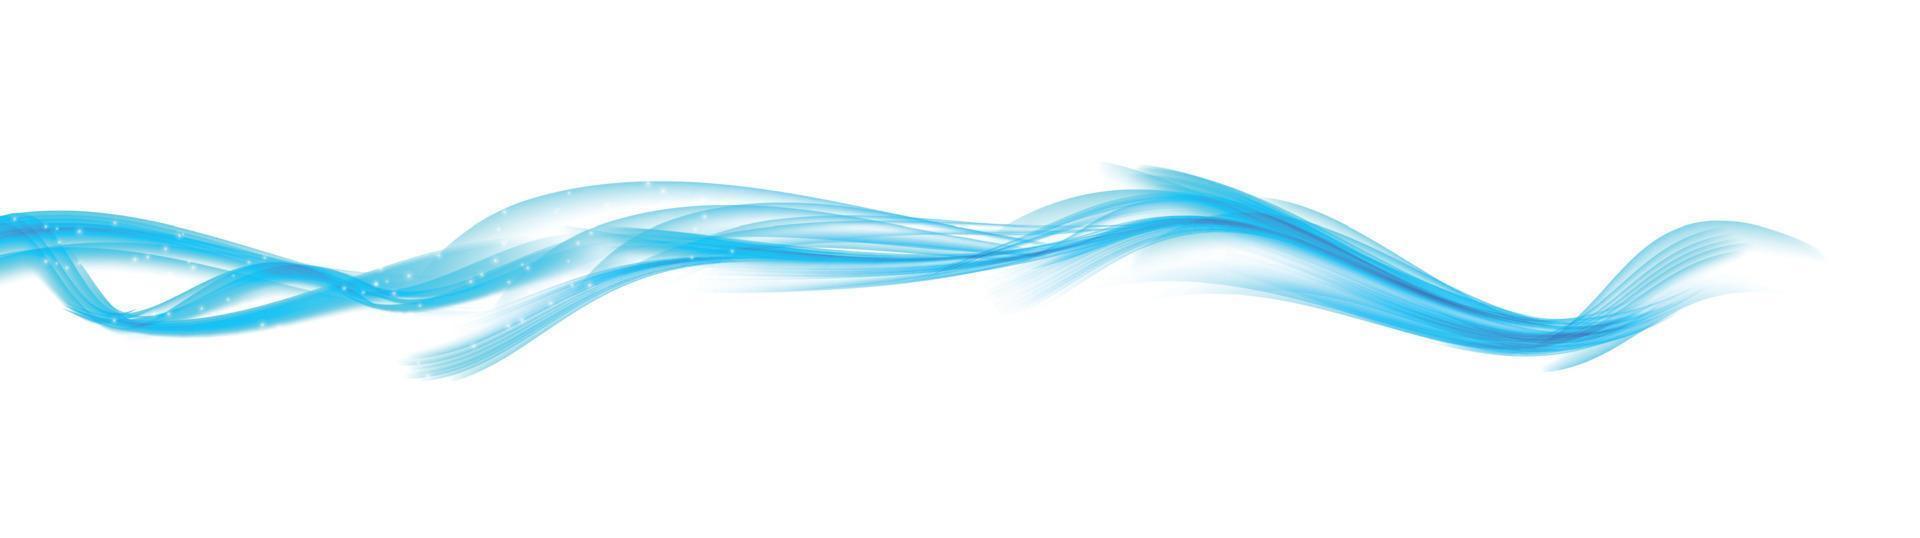 set van abstracte blauwe golf ingesteld op transparante achtergrond. vector illustratie